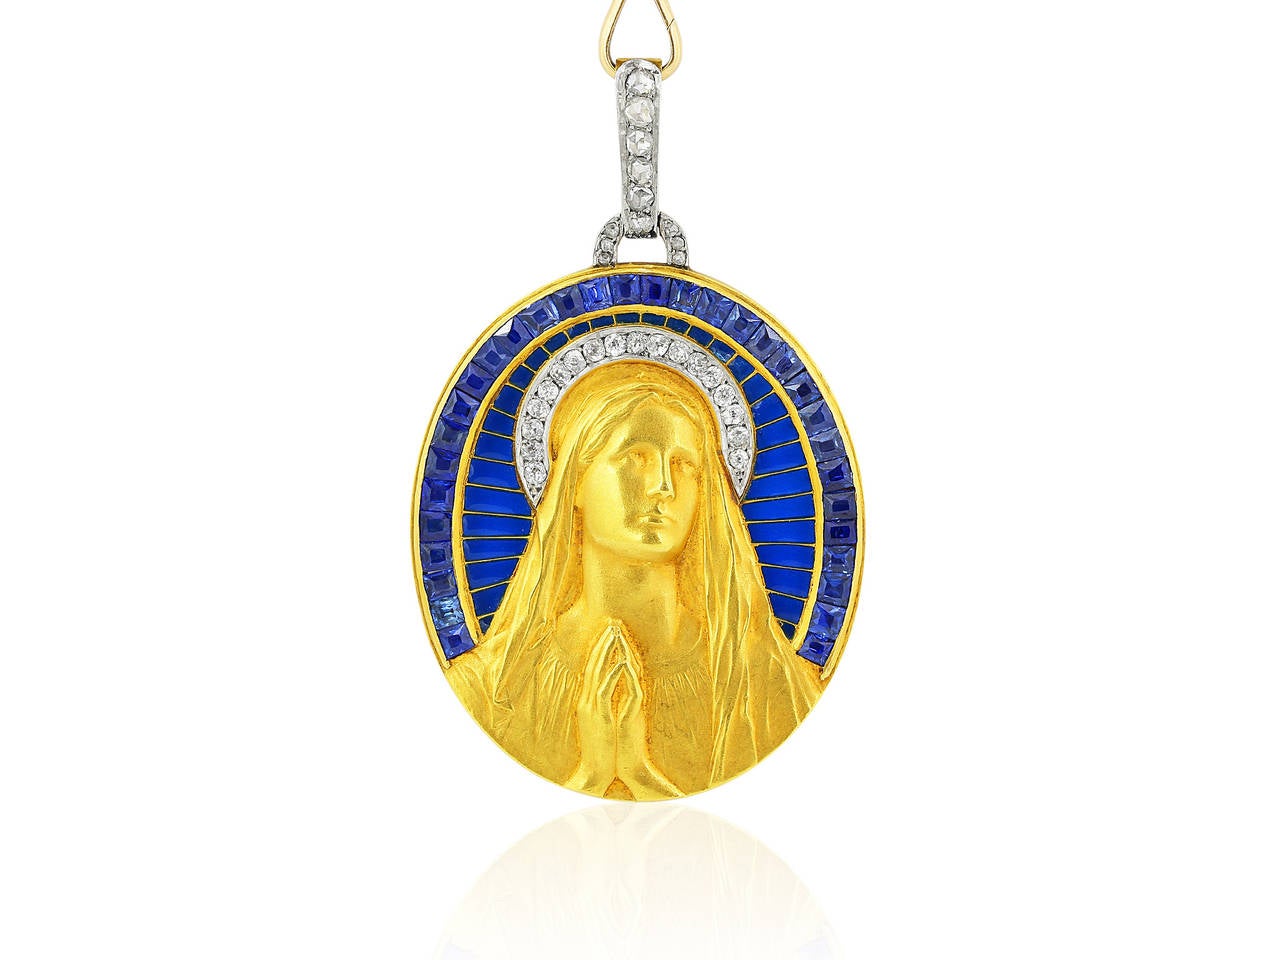 Antique Art Nouveau Plique-a-jour 18 karat yellow gold Madonna pendant featuring a single row of invisible set calibre cut sapphires, blue enamel, rose and Old European cut diamonds.